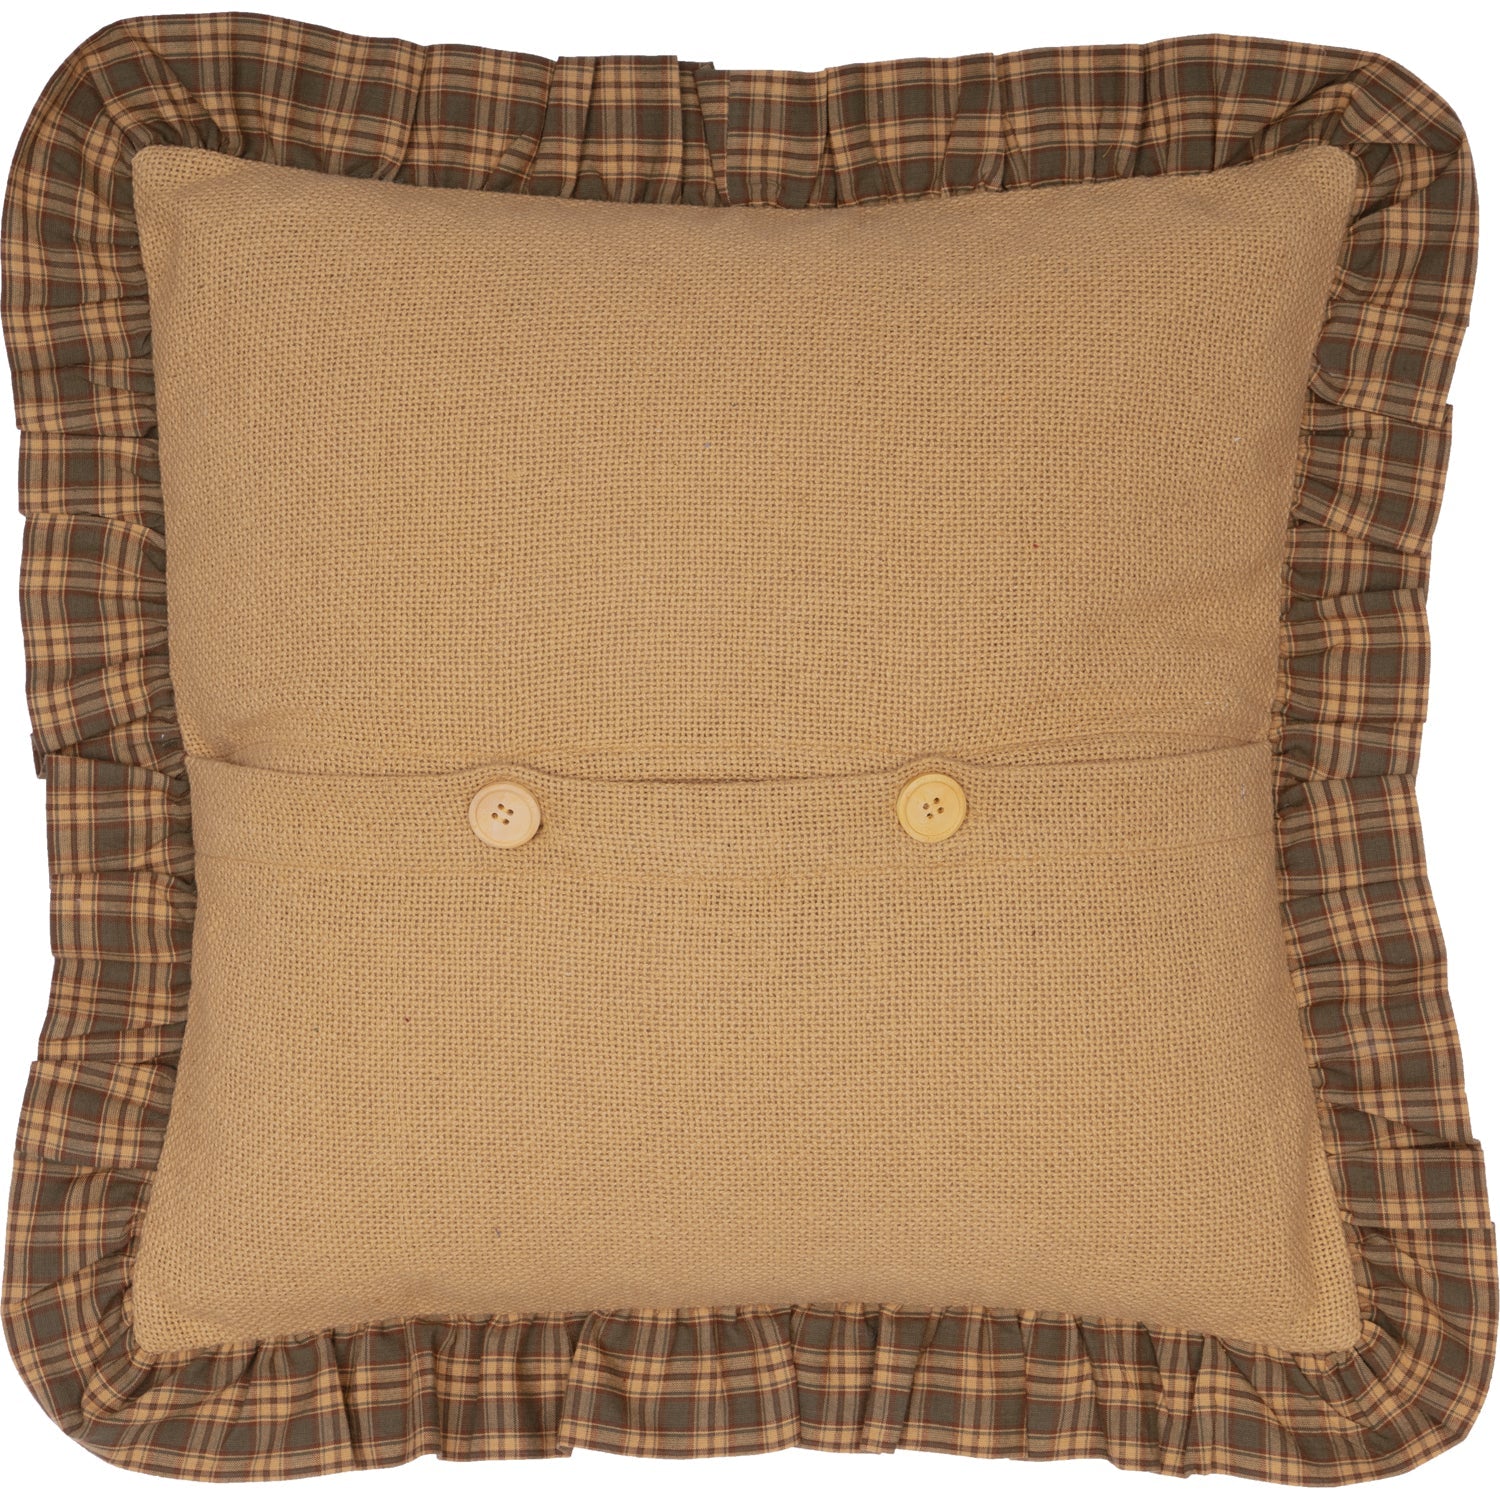 Cedar Ridge Tree Applique Pillow 18x18 VHC Brands